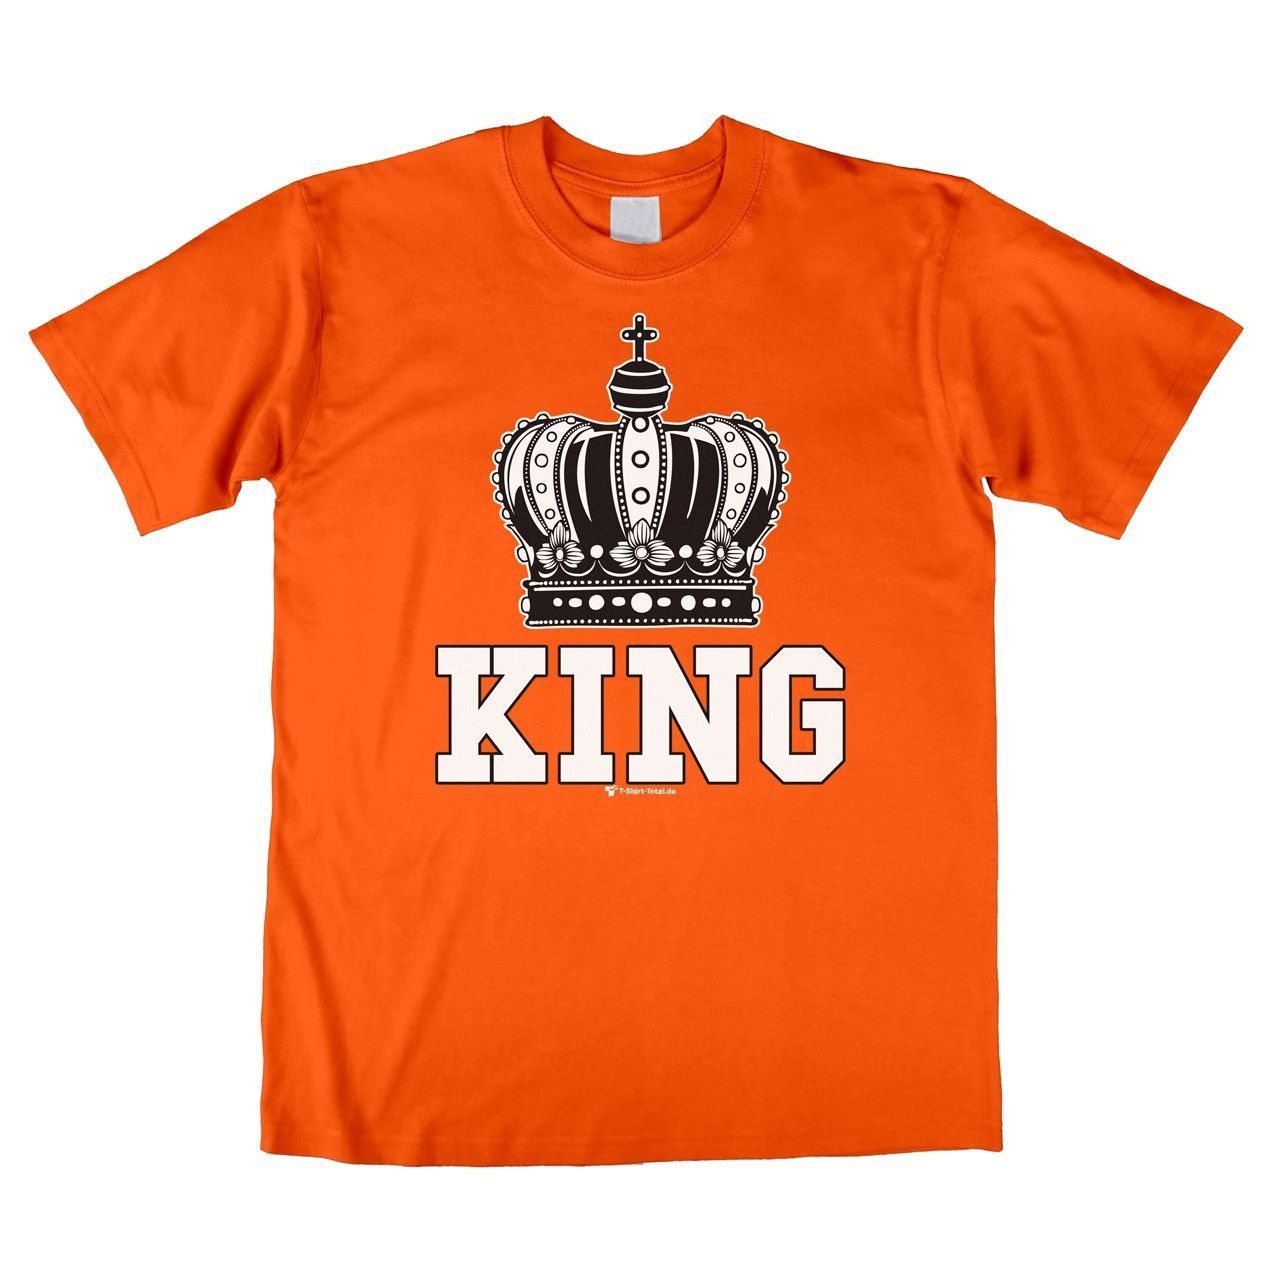 King Unisex T-Shirt orange Large